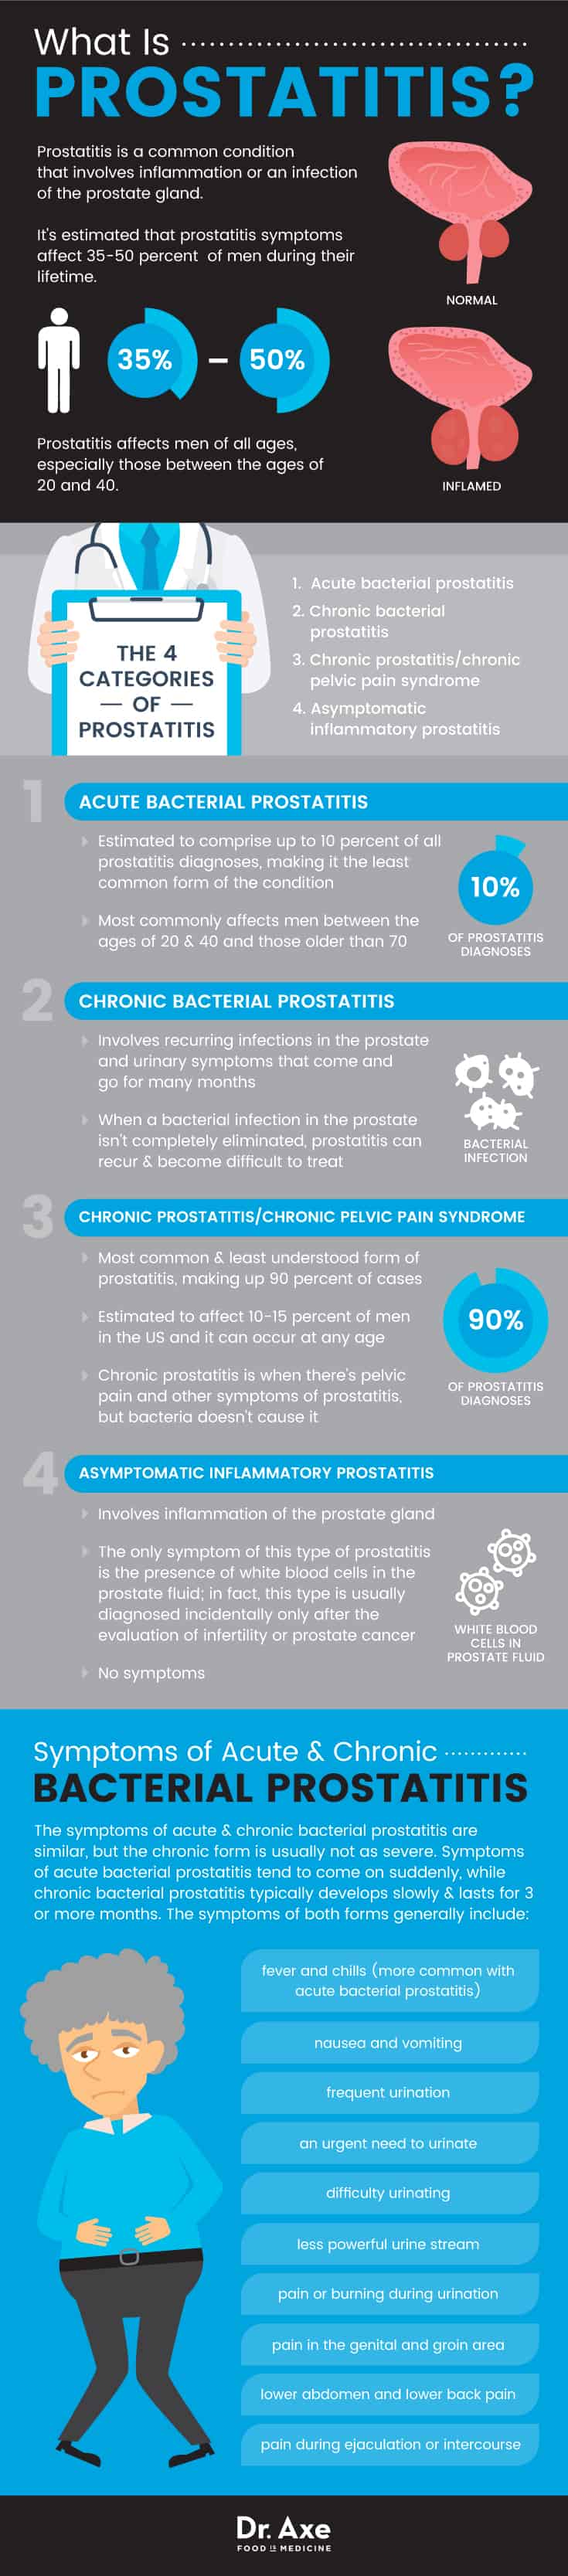 What is prostatitis? - Dr. Axe